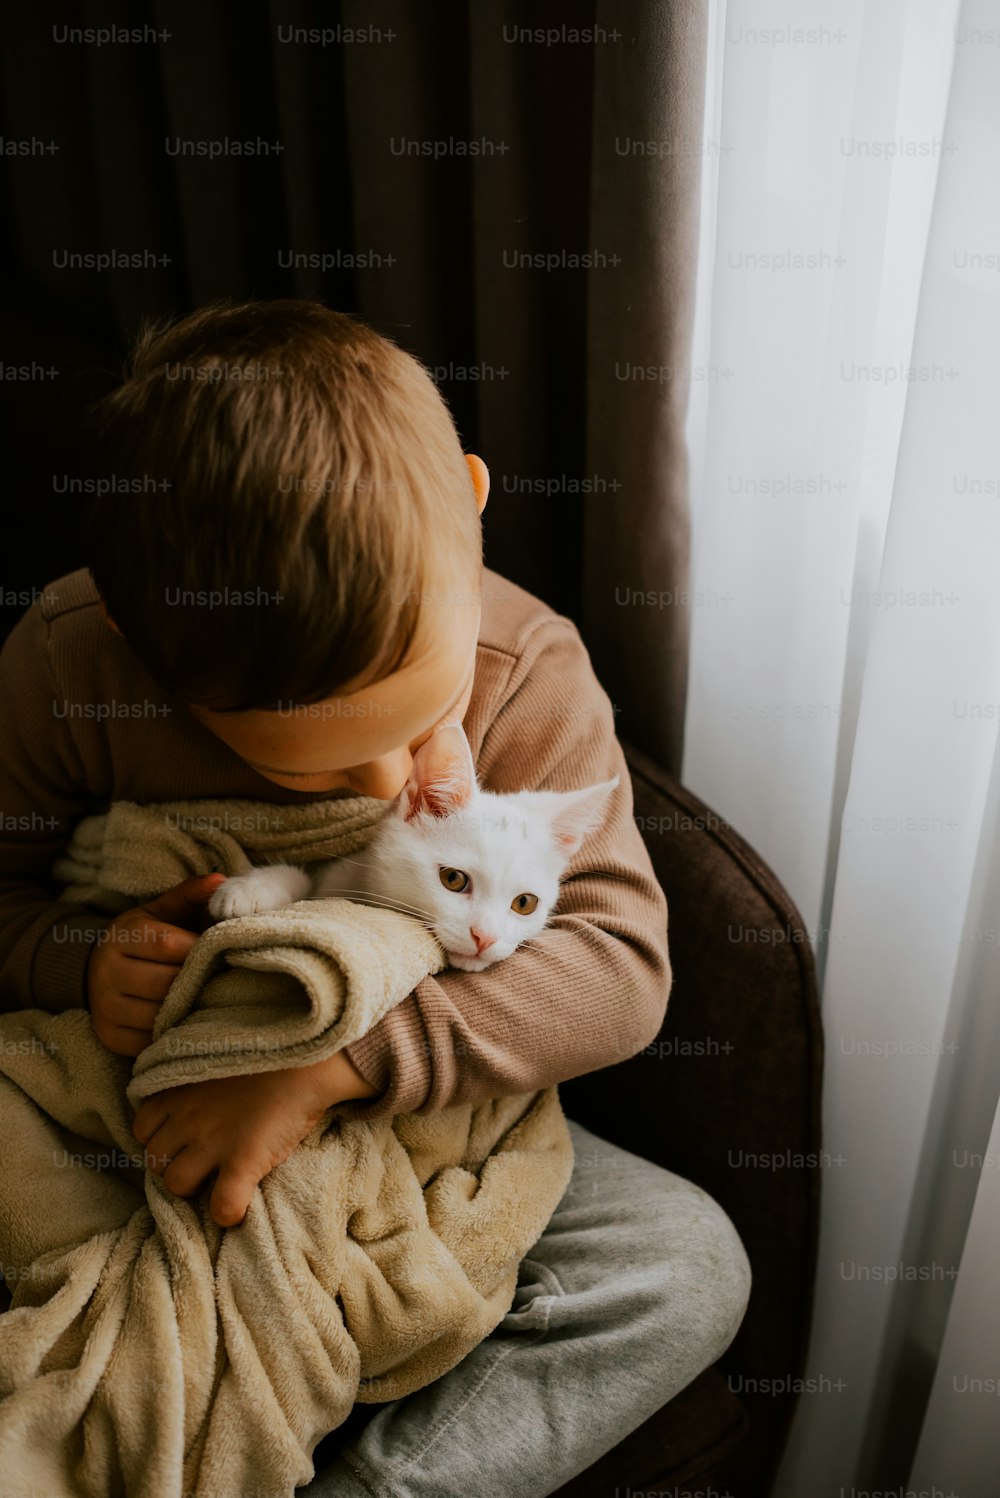 담요 위에 흰 고양이를 안고 있는 어린 소년